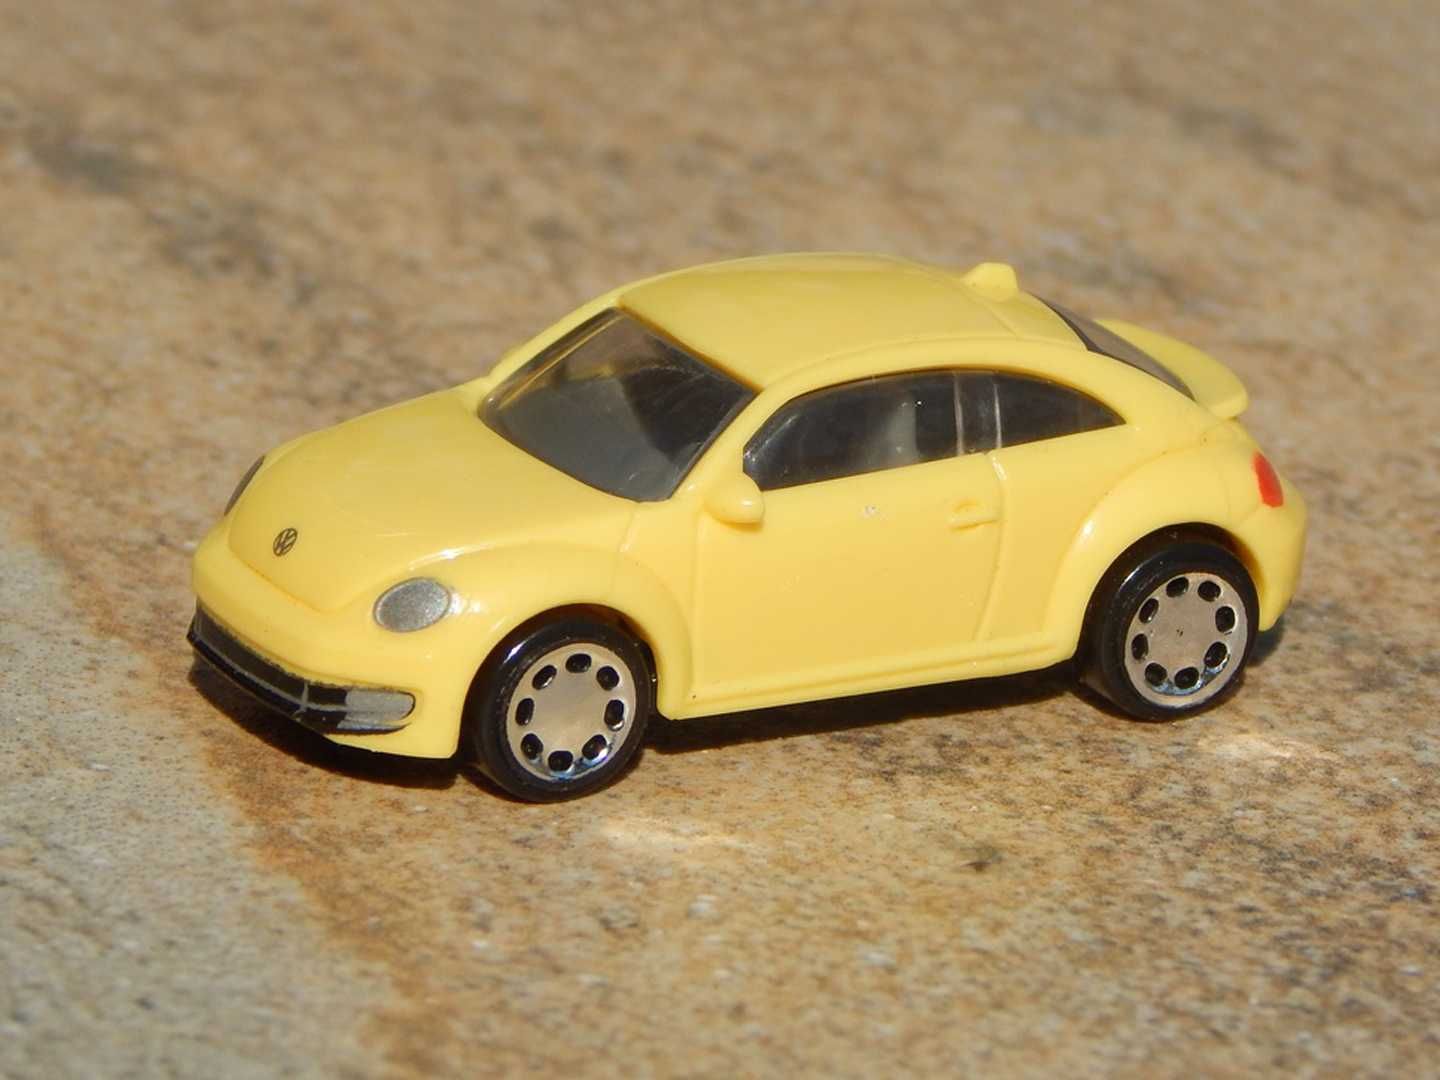 Macheta Volkswagen New Beetle 2015 Kinder sc 1:87 HO plastic